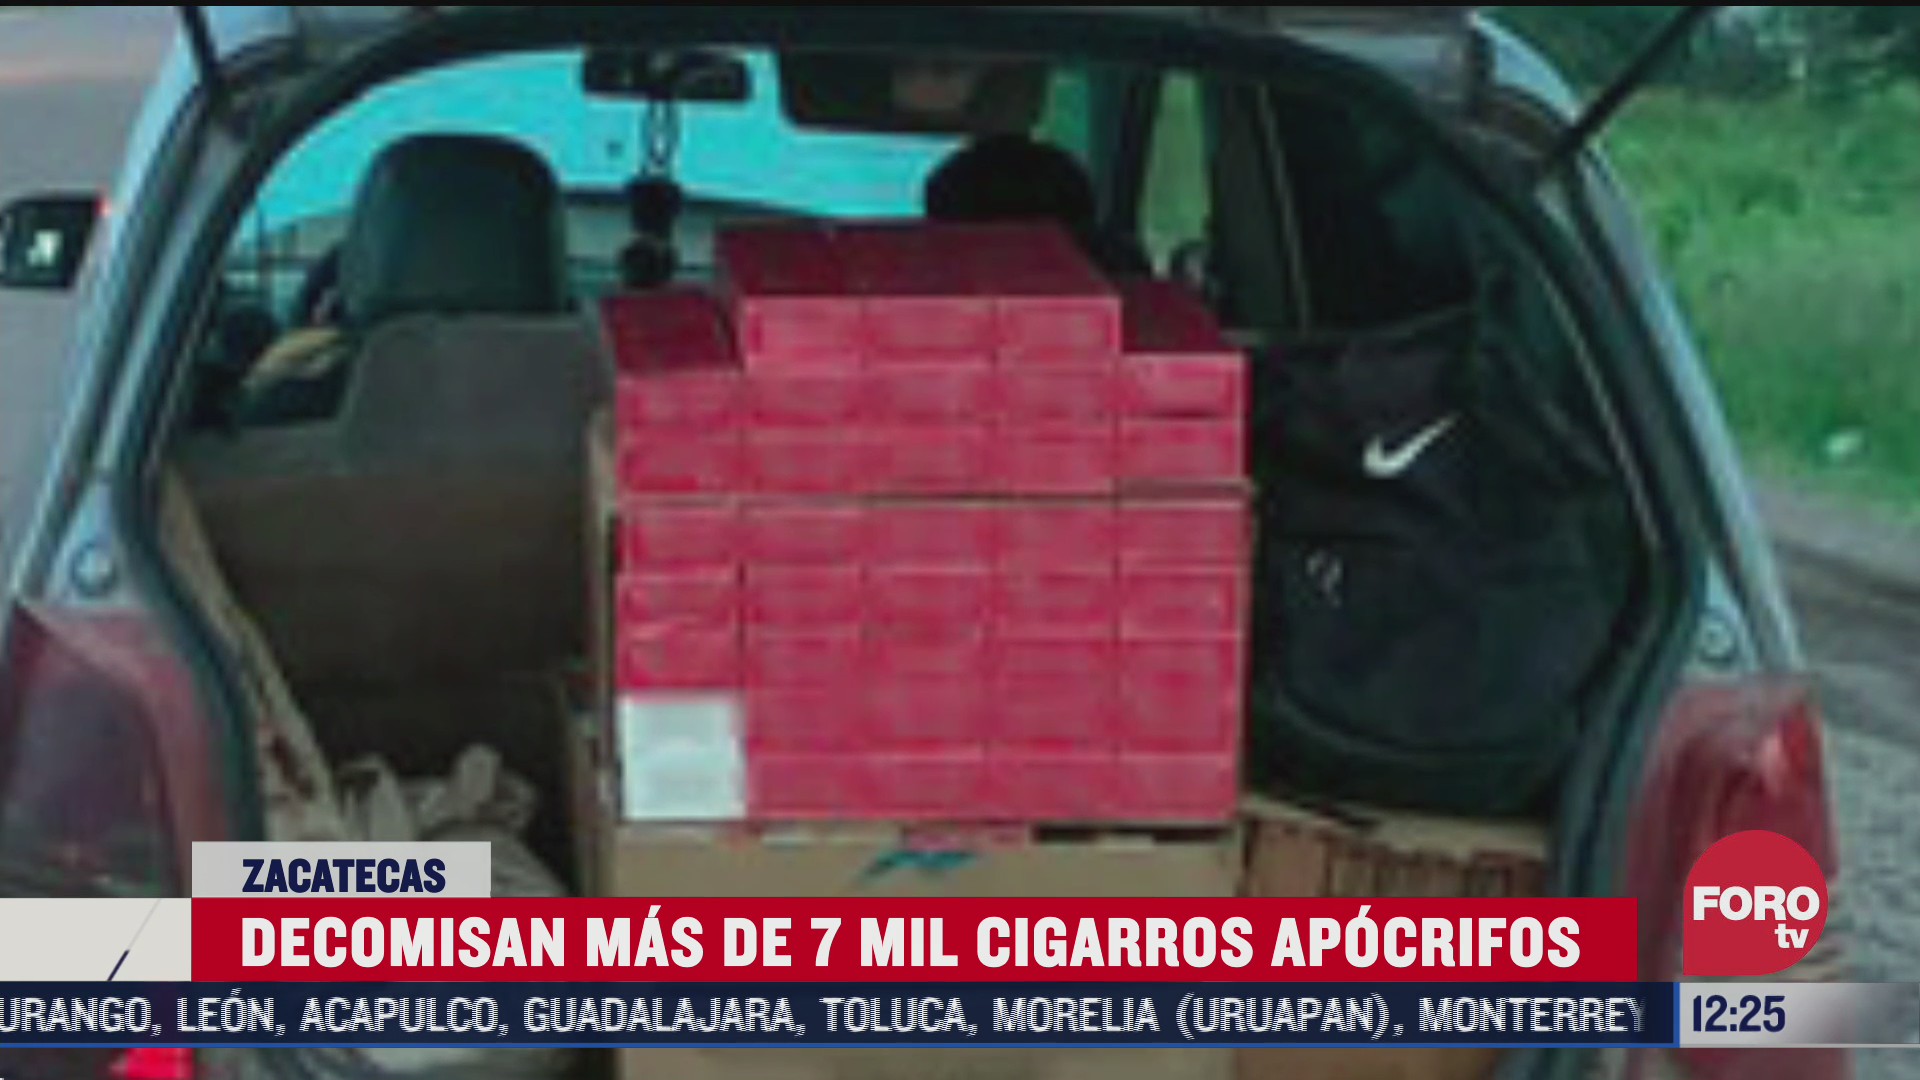 decomisan mas de 7 mil cigarros apocrifos en zacatecas